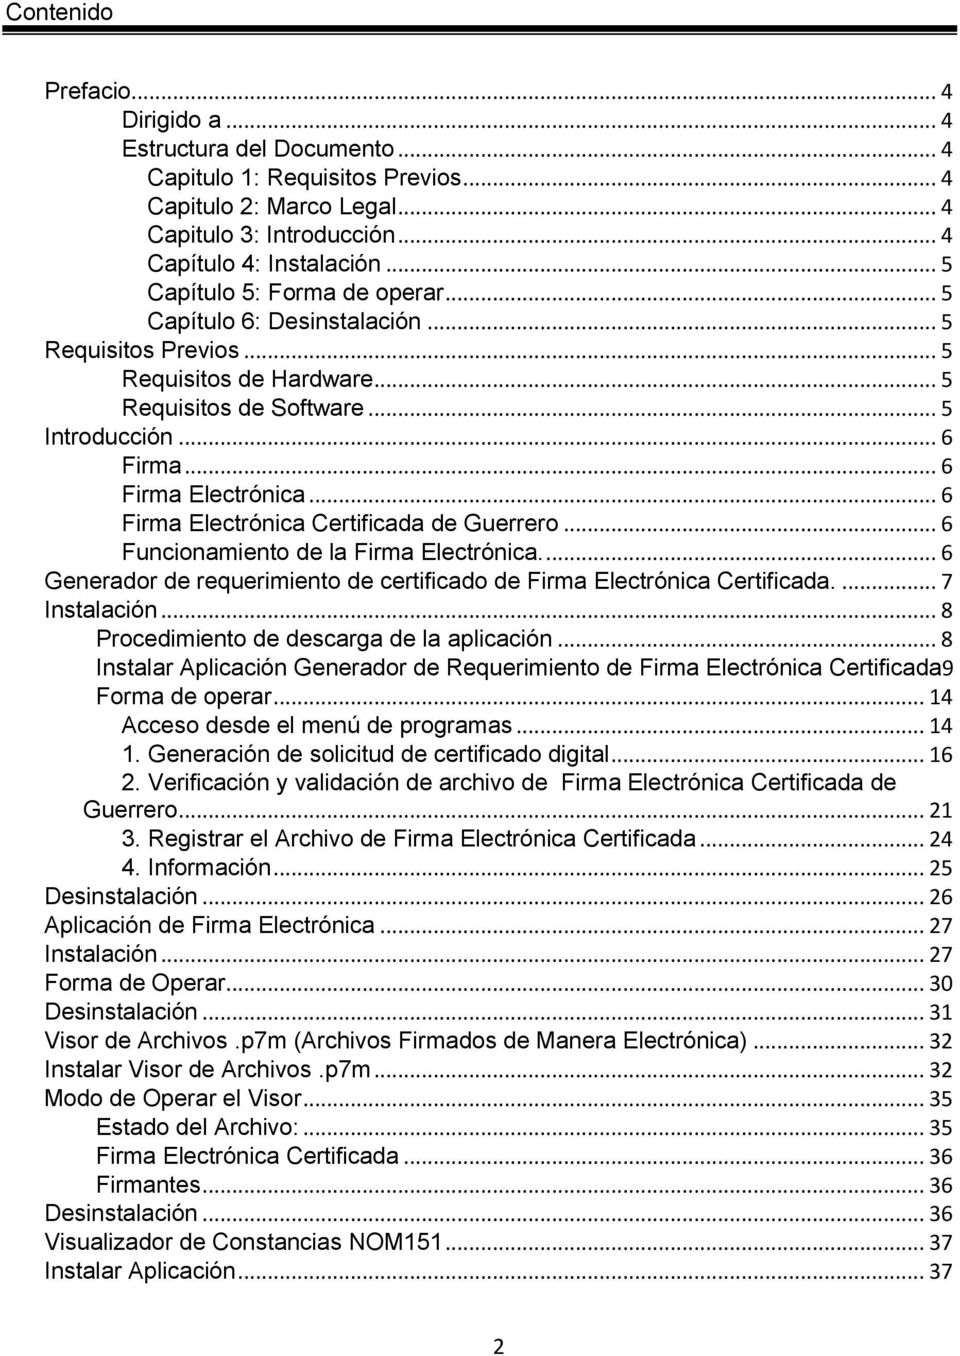 .. 6 Firma Electrónica Certificada de Guerrero... 6 Funcionamiento de la Firma Electrónica.... 6 Generador de requerimiento de certificado de Firma Electrónica Certificada.... 7 Instalación.